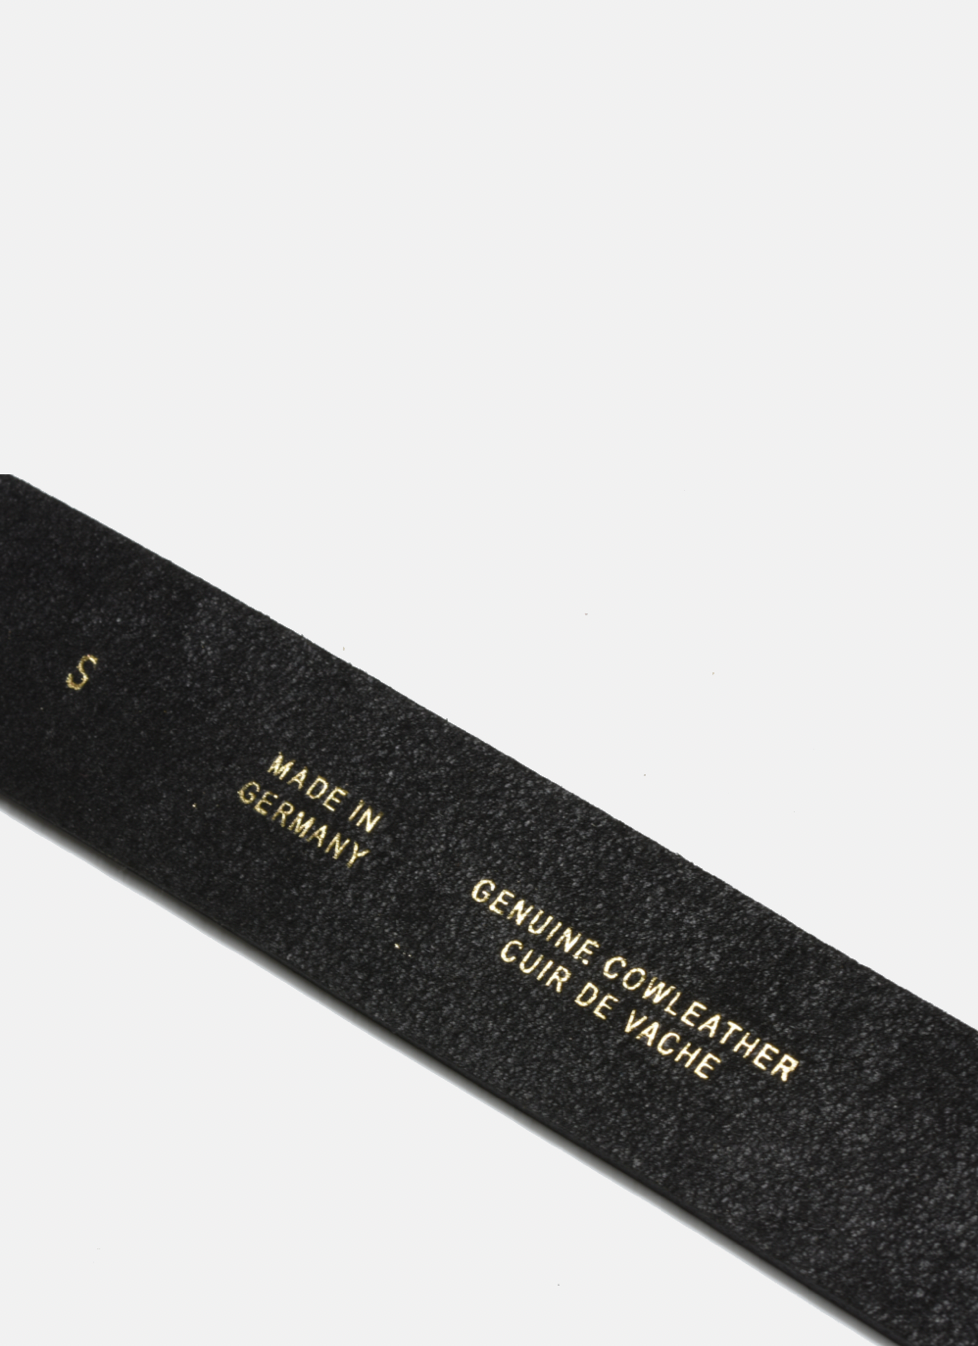 Wide Leather Steel Buckle Belt - BLACK